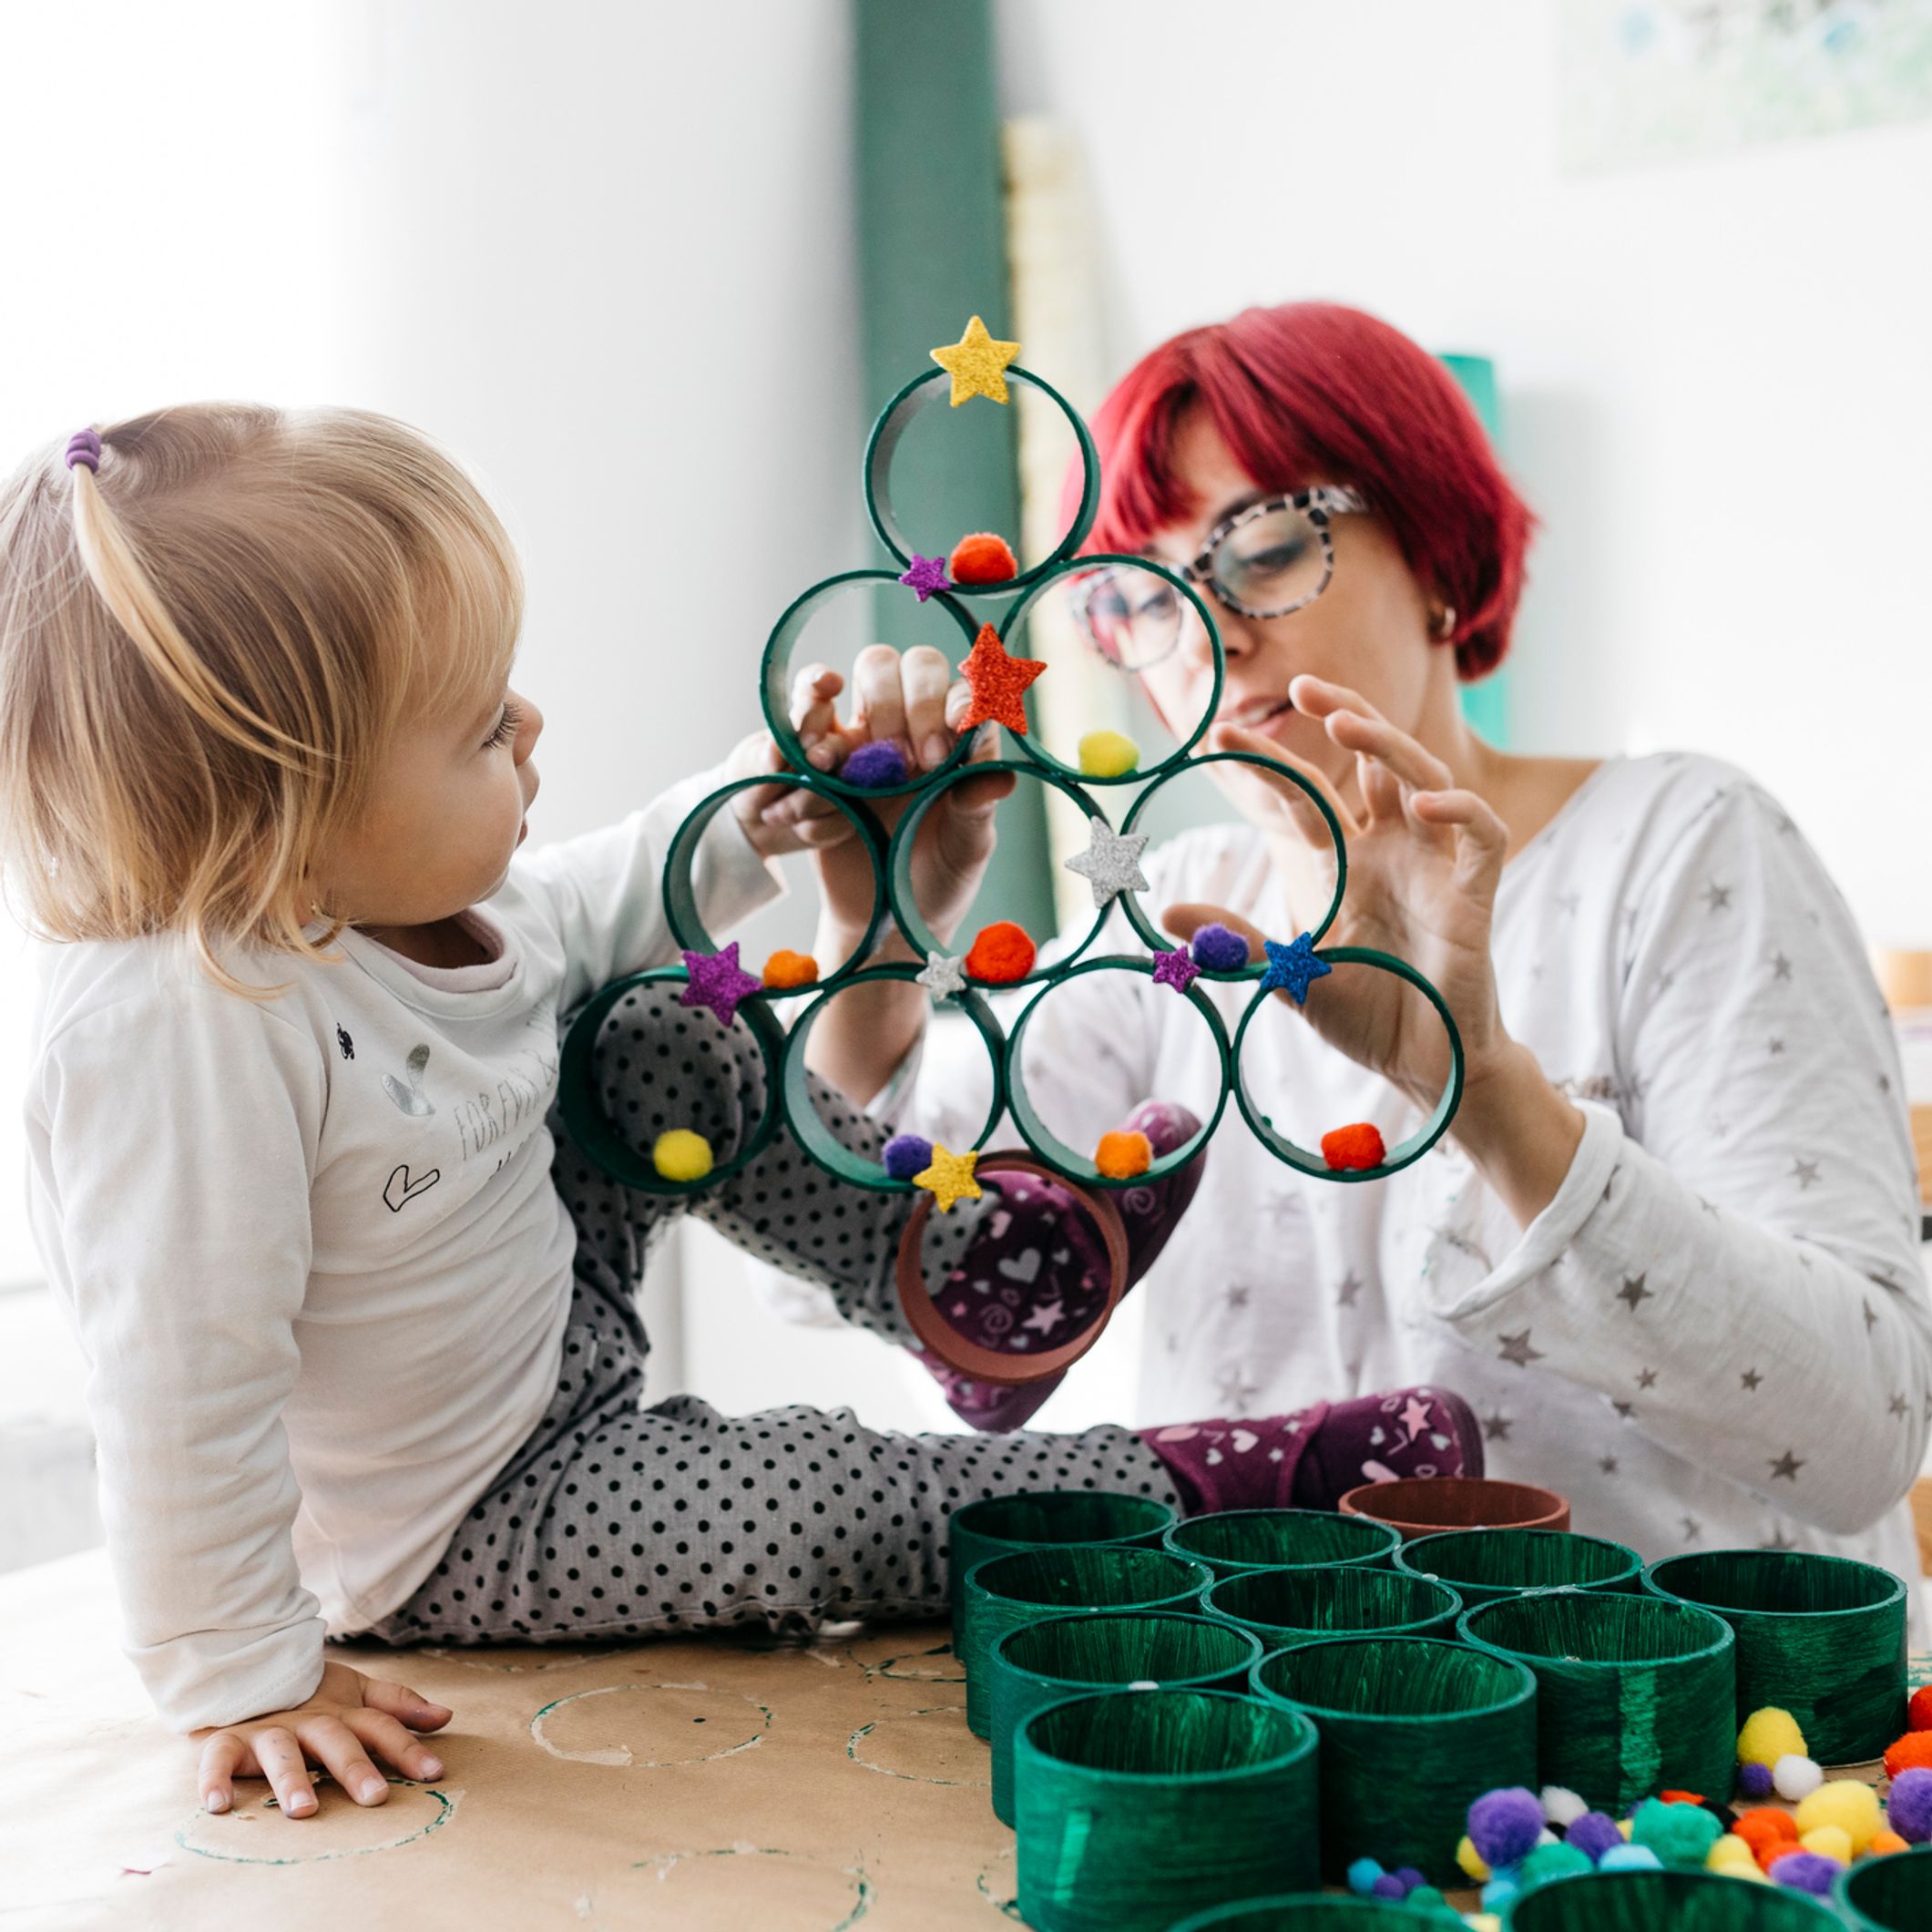 20 idées d'activités faciles à faire avec les tout-petits de 2 ans 